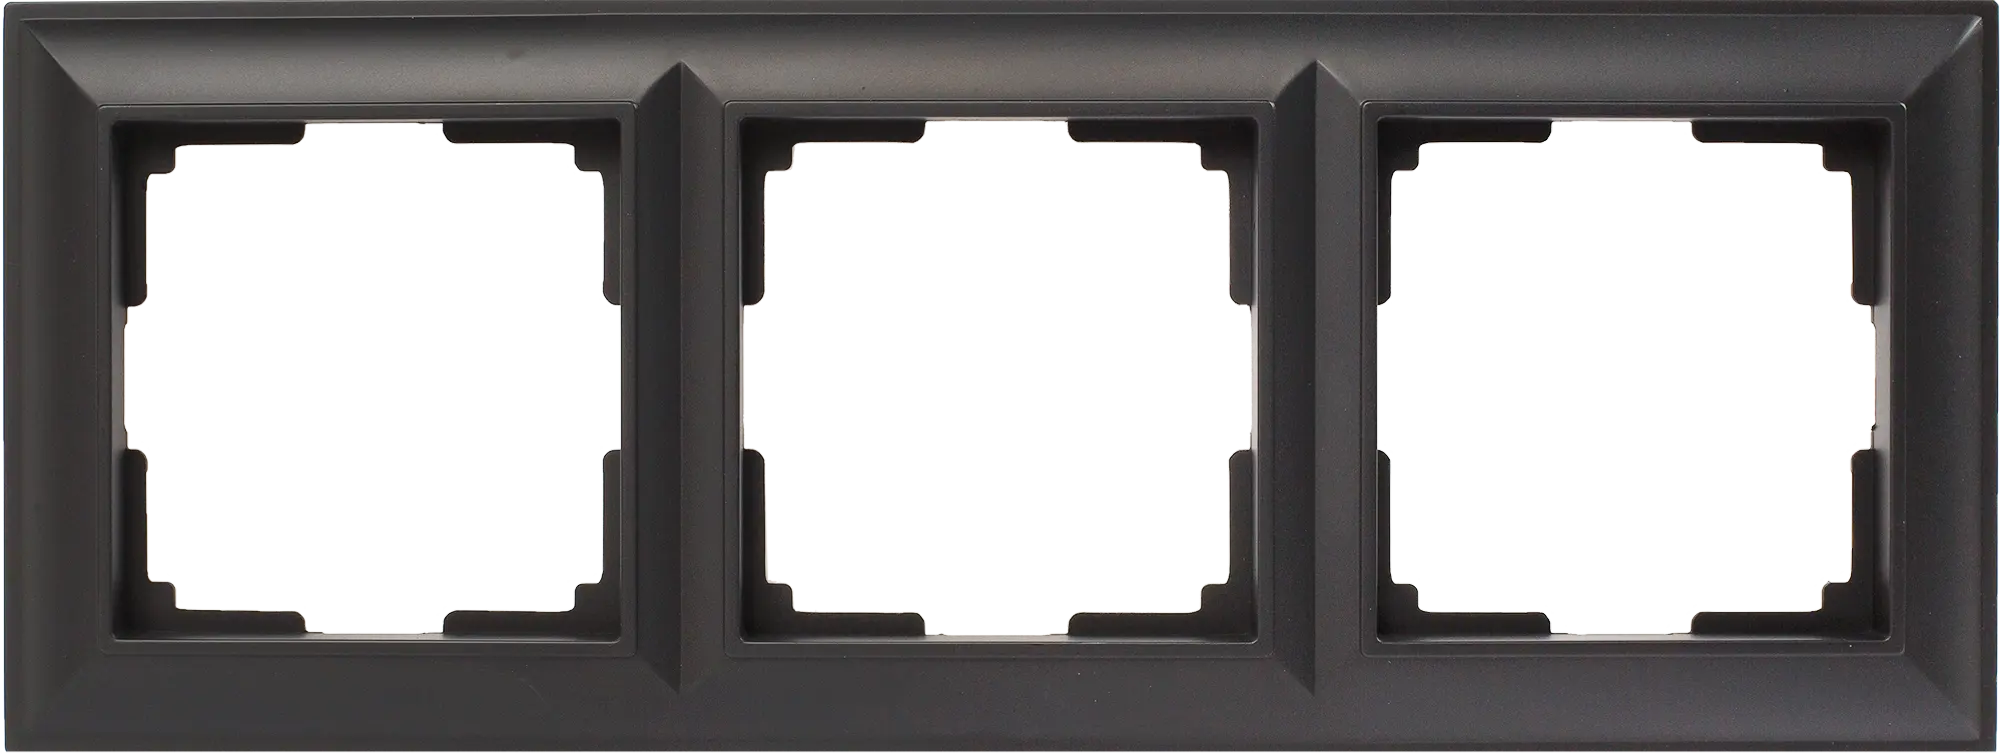 Рамка для розеток и выключателей Werkel Fiore 3 поста, цвет чёрный матовый рамка эра 14 5204 05 на 4 поста металл elegance чёрный антрацит б0034561